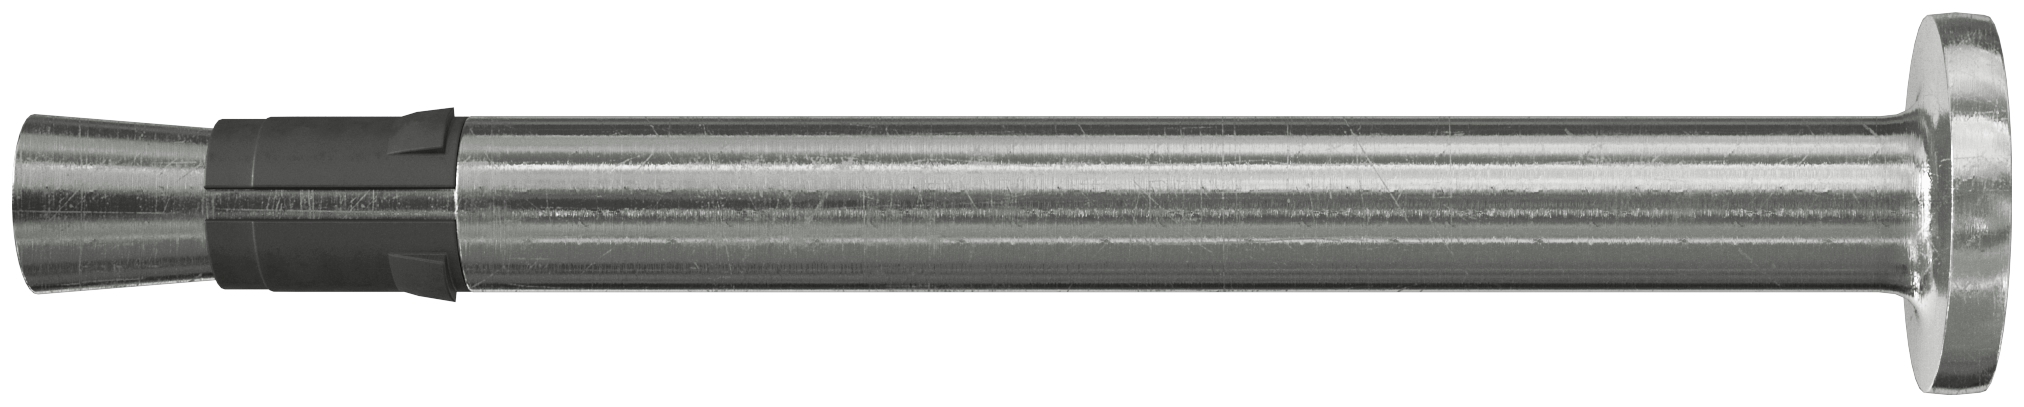 Fischer FNA II 6 x 30/100 HCR. Der montagefreundliche Schlaganker aus hochkorrosionsbeständigem Stahl für die Mehrfachbefestigung.